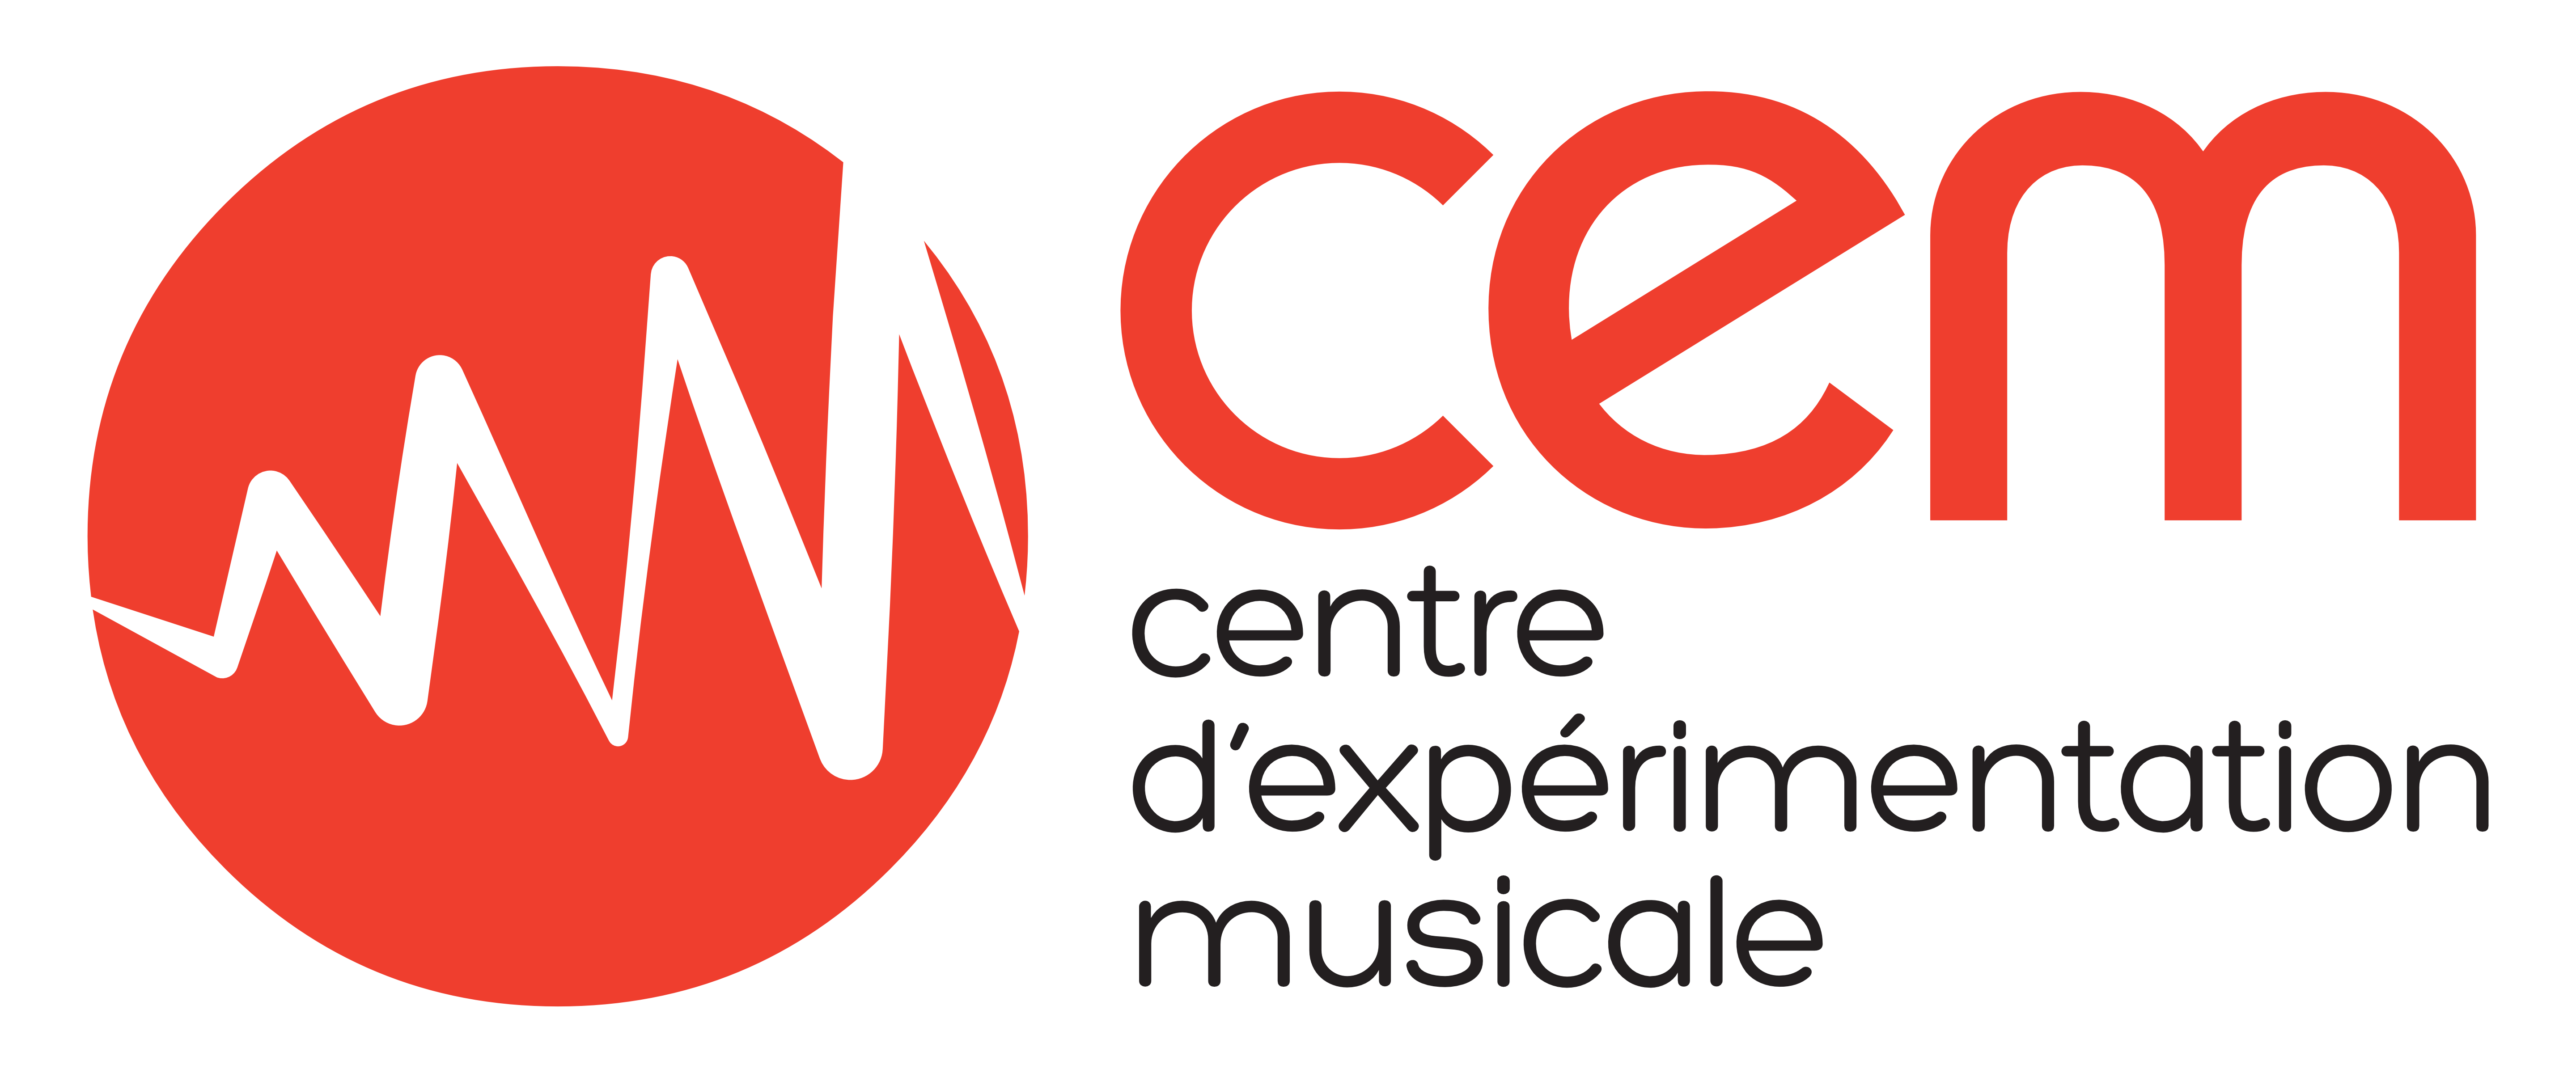 Centre d’expérimentation musicale